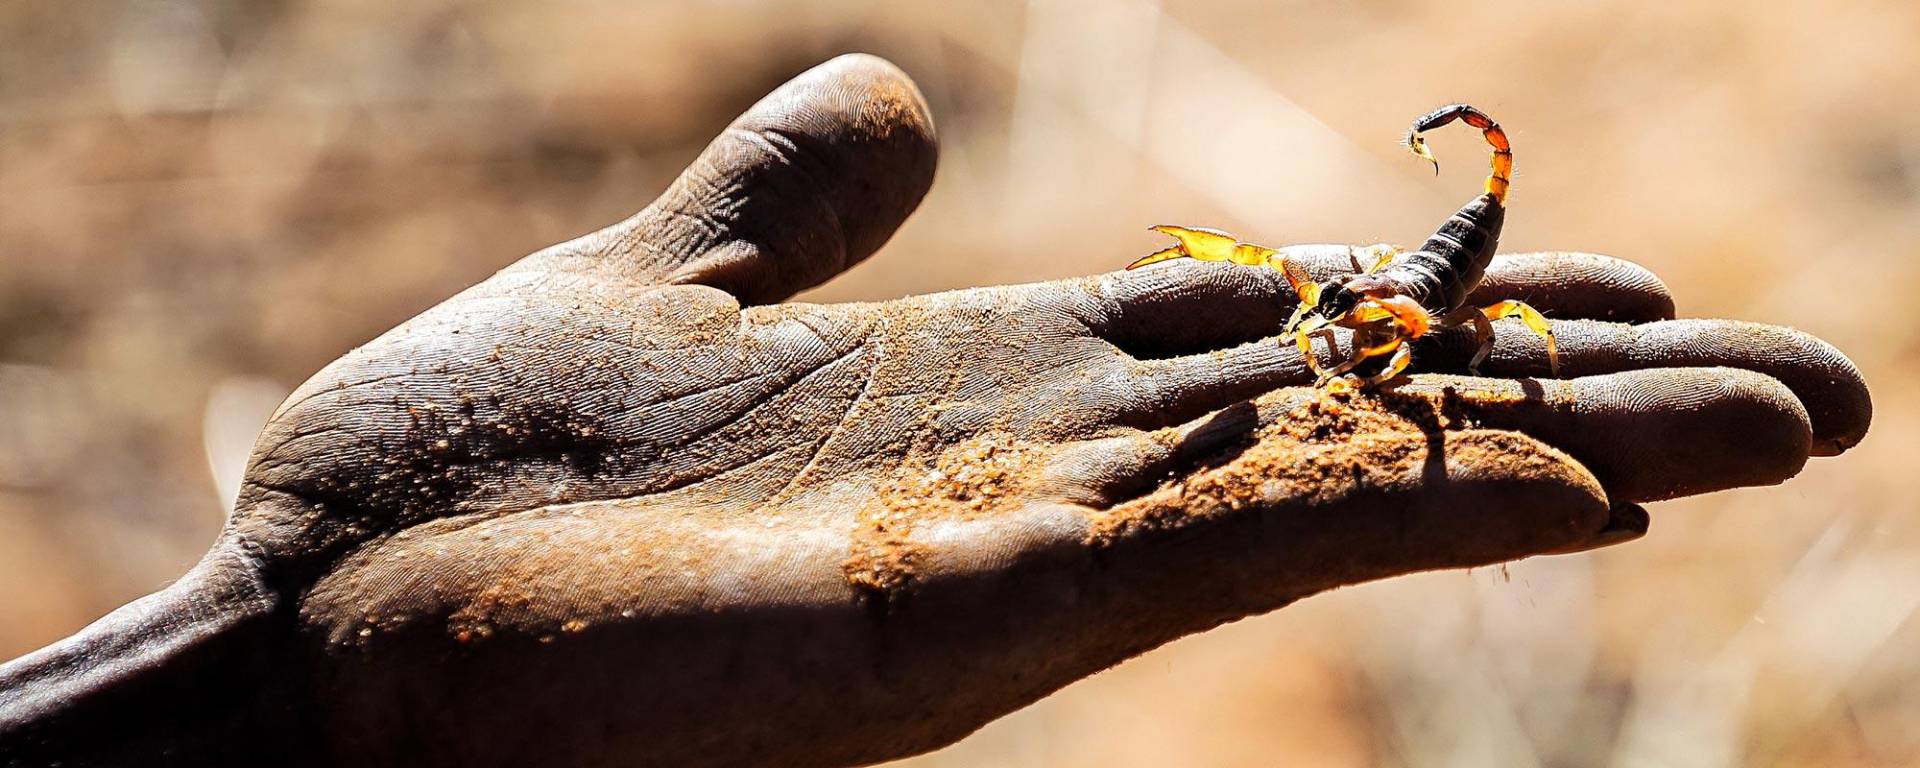 Peacfule scorpion in the Kalahari